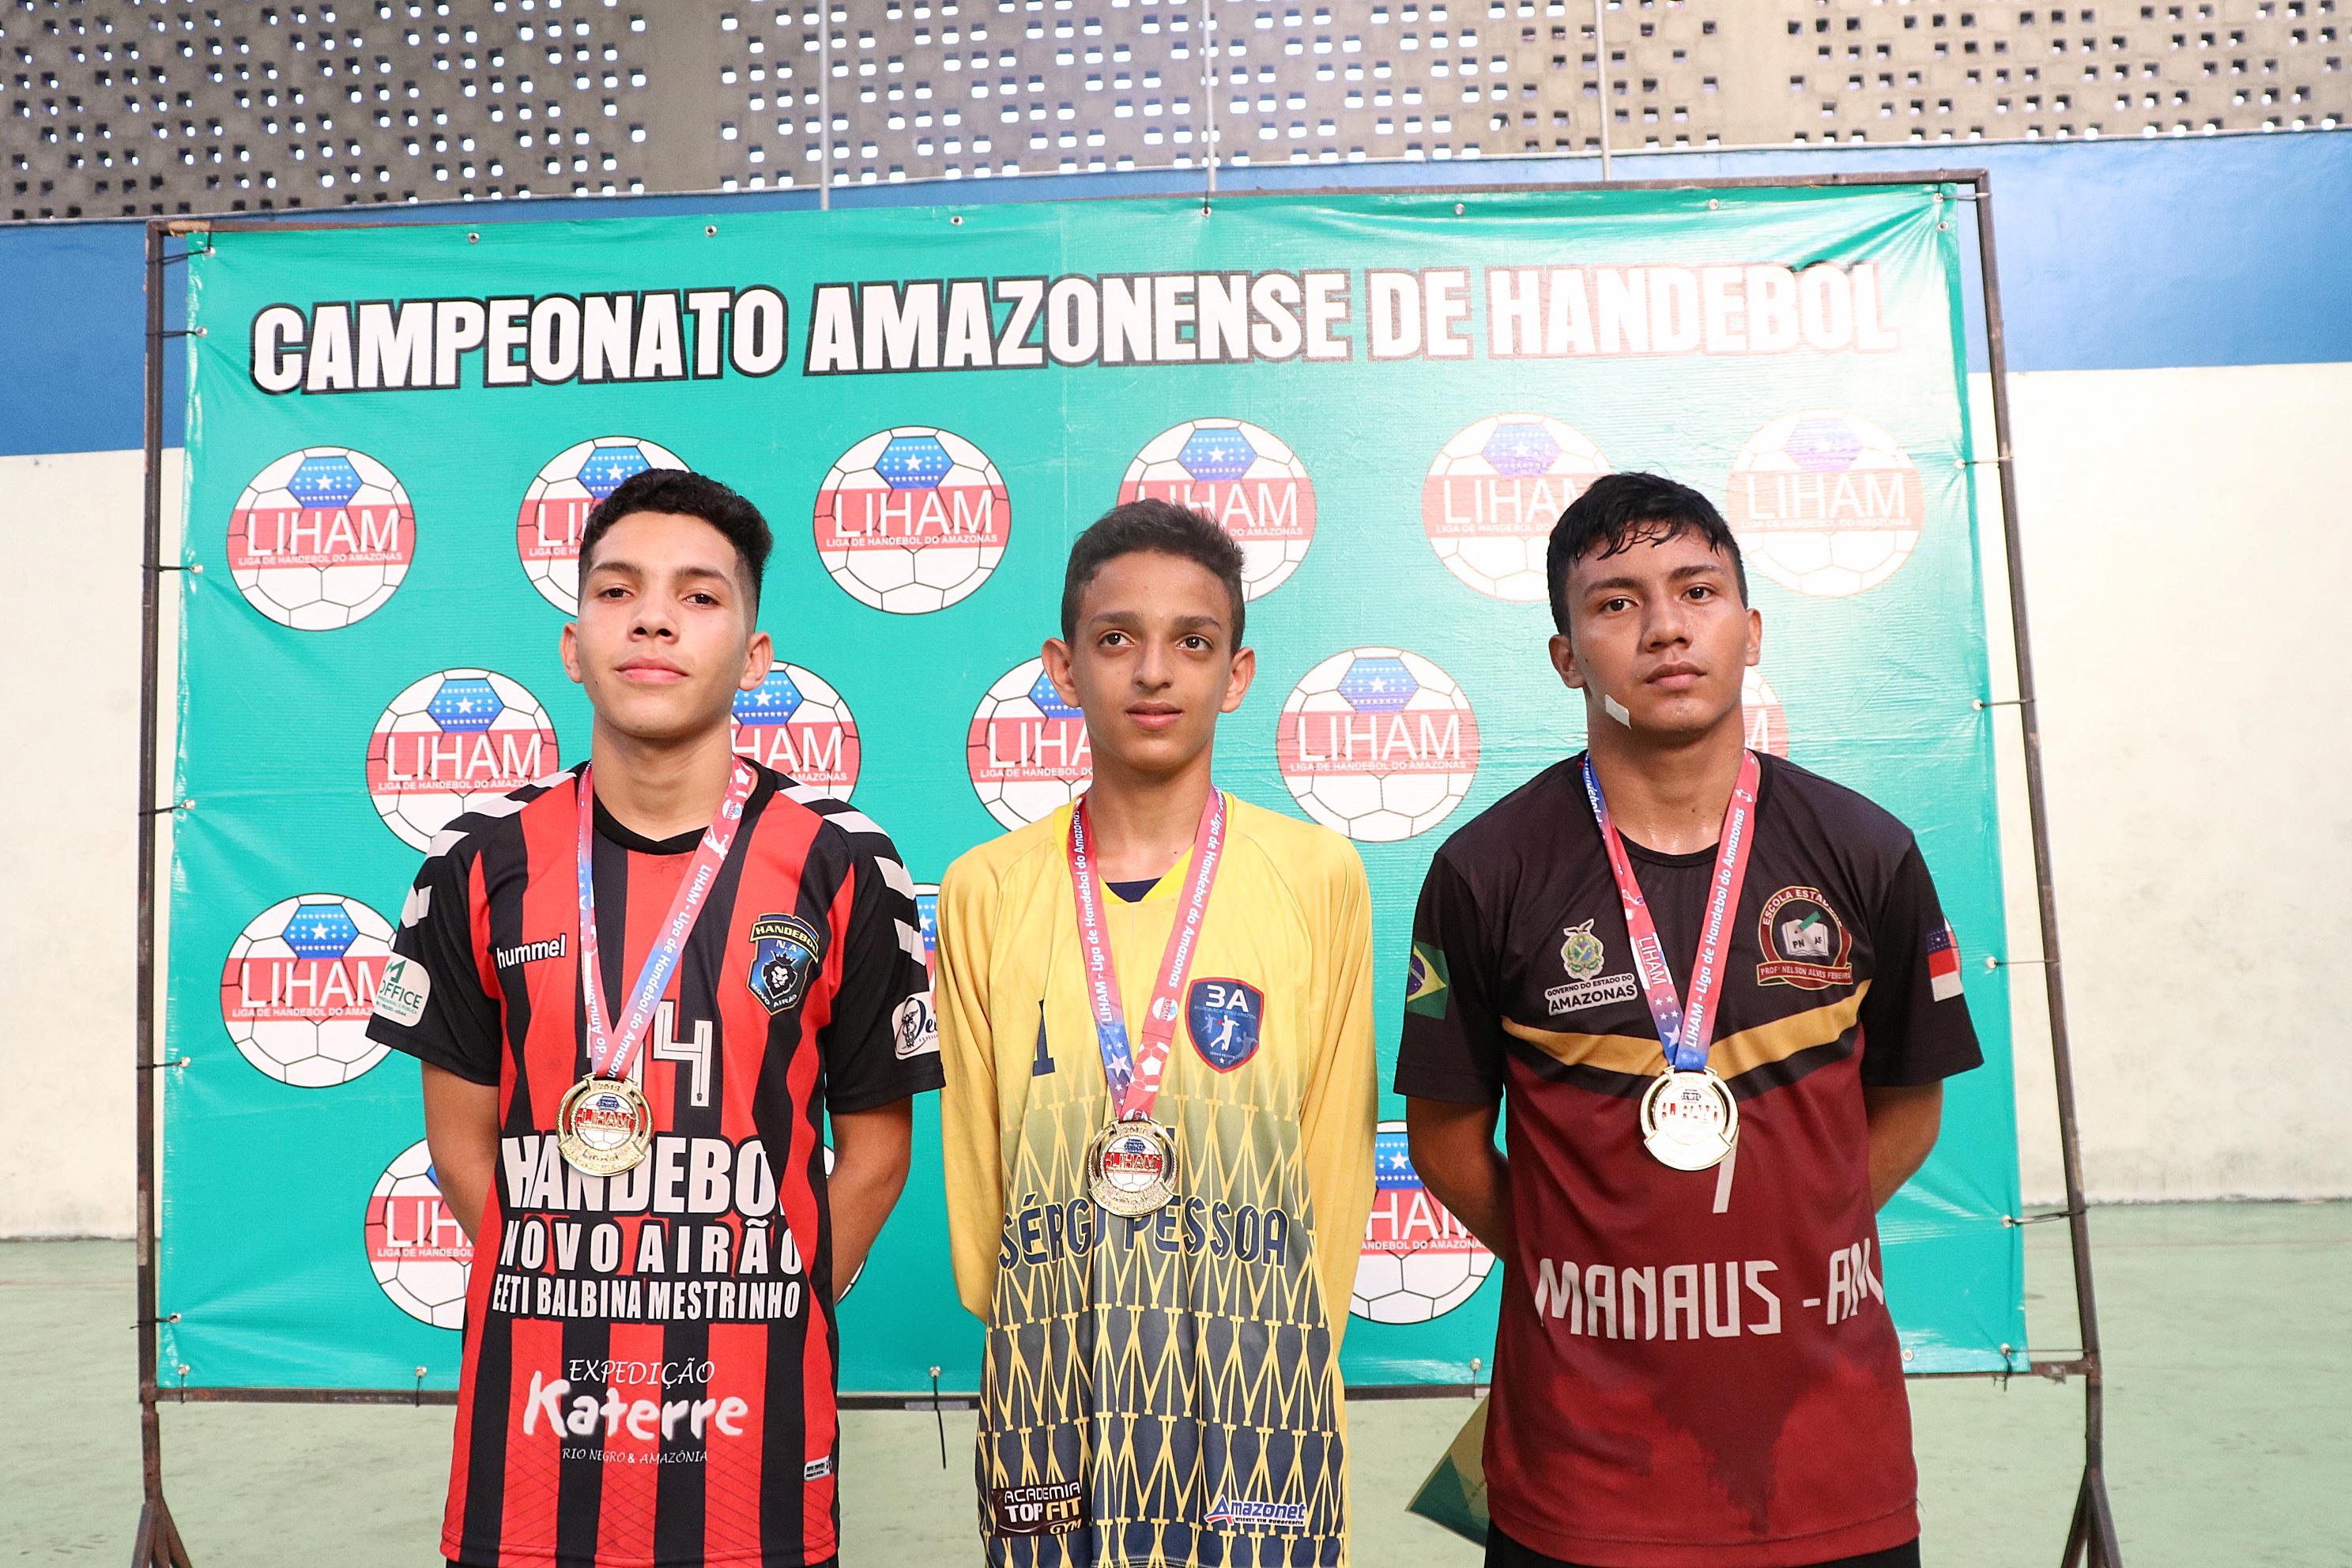 Com presença de estados da Amazônia, campeonato de handebol